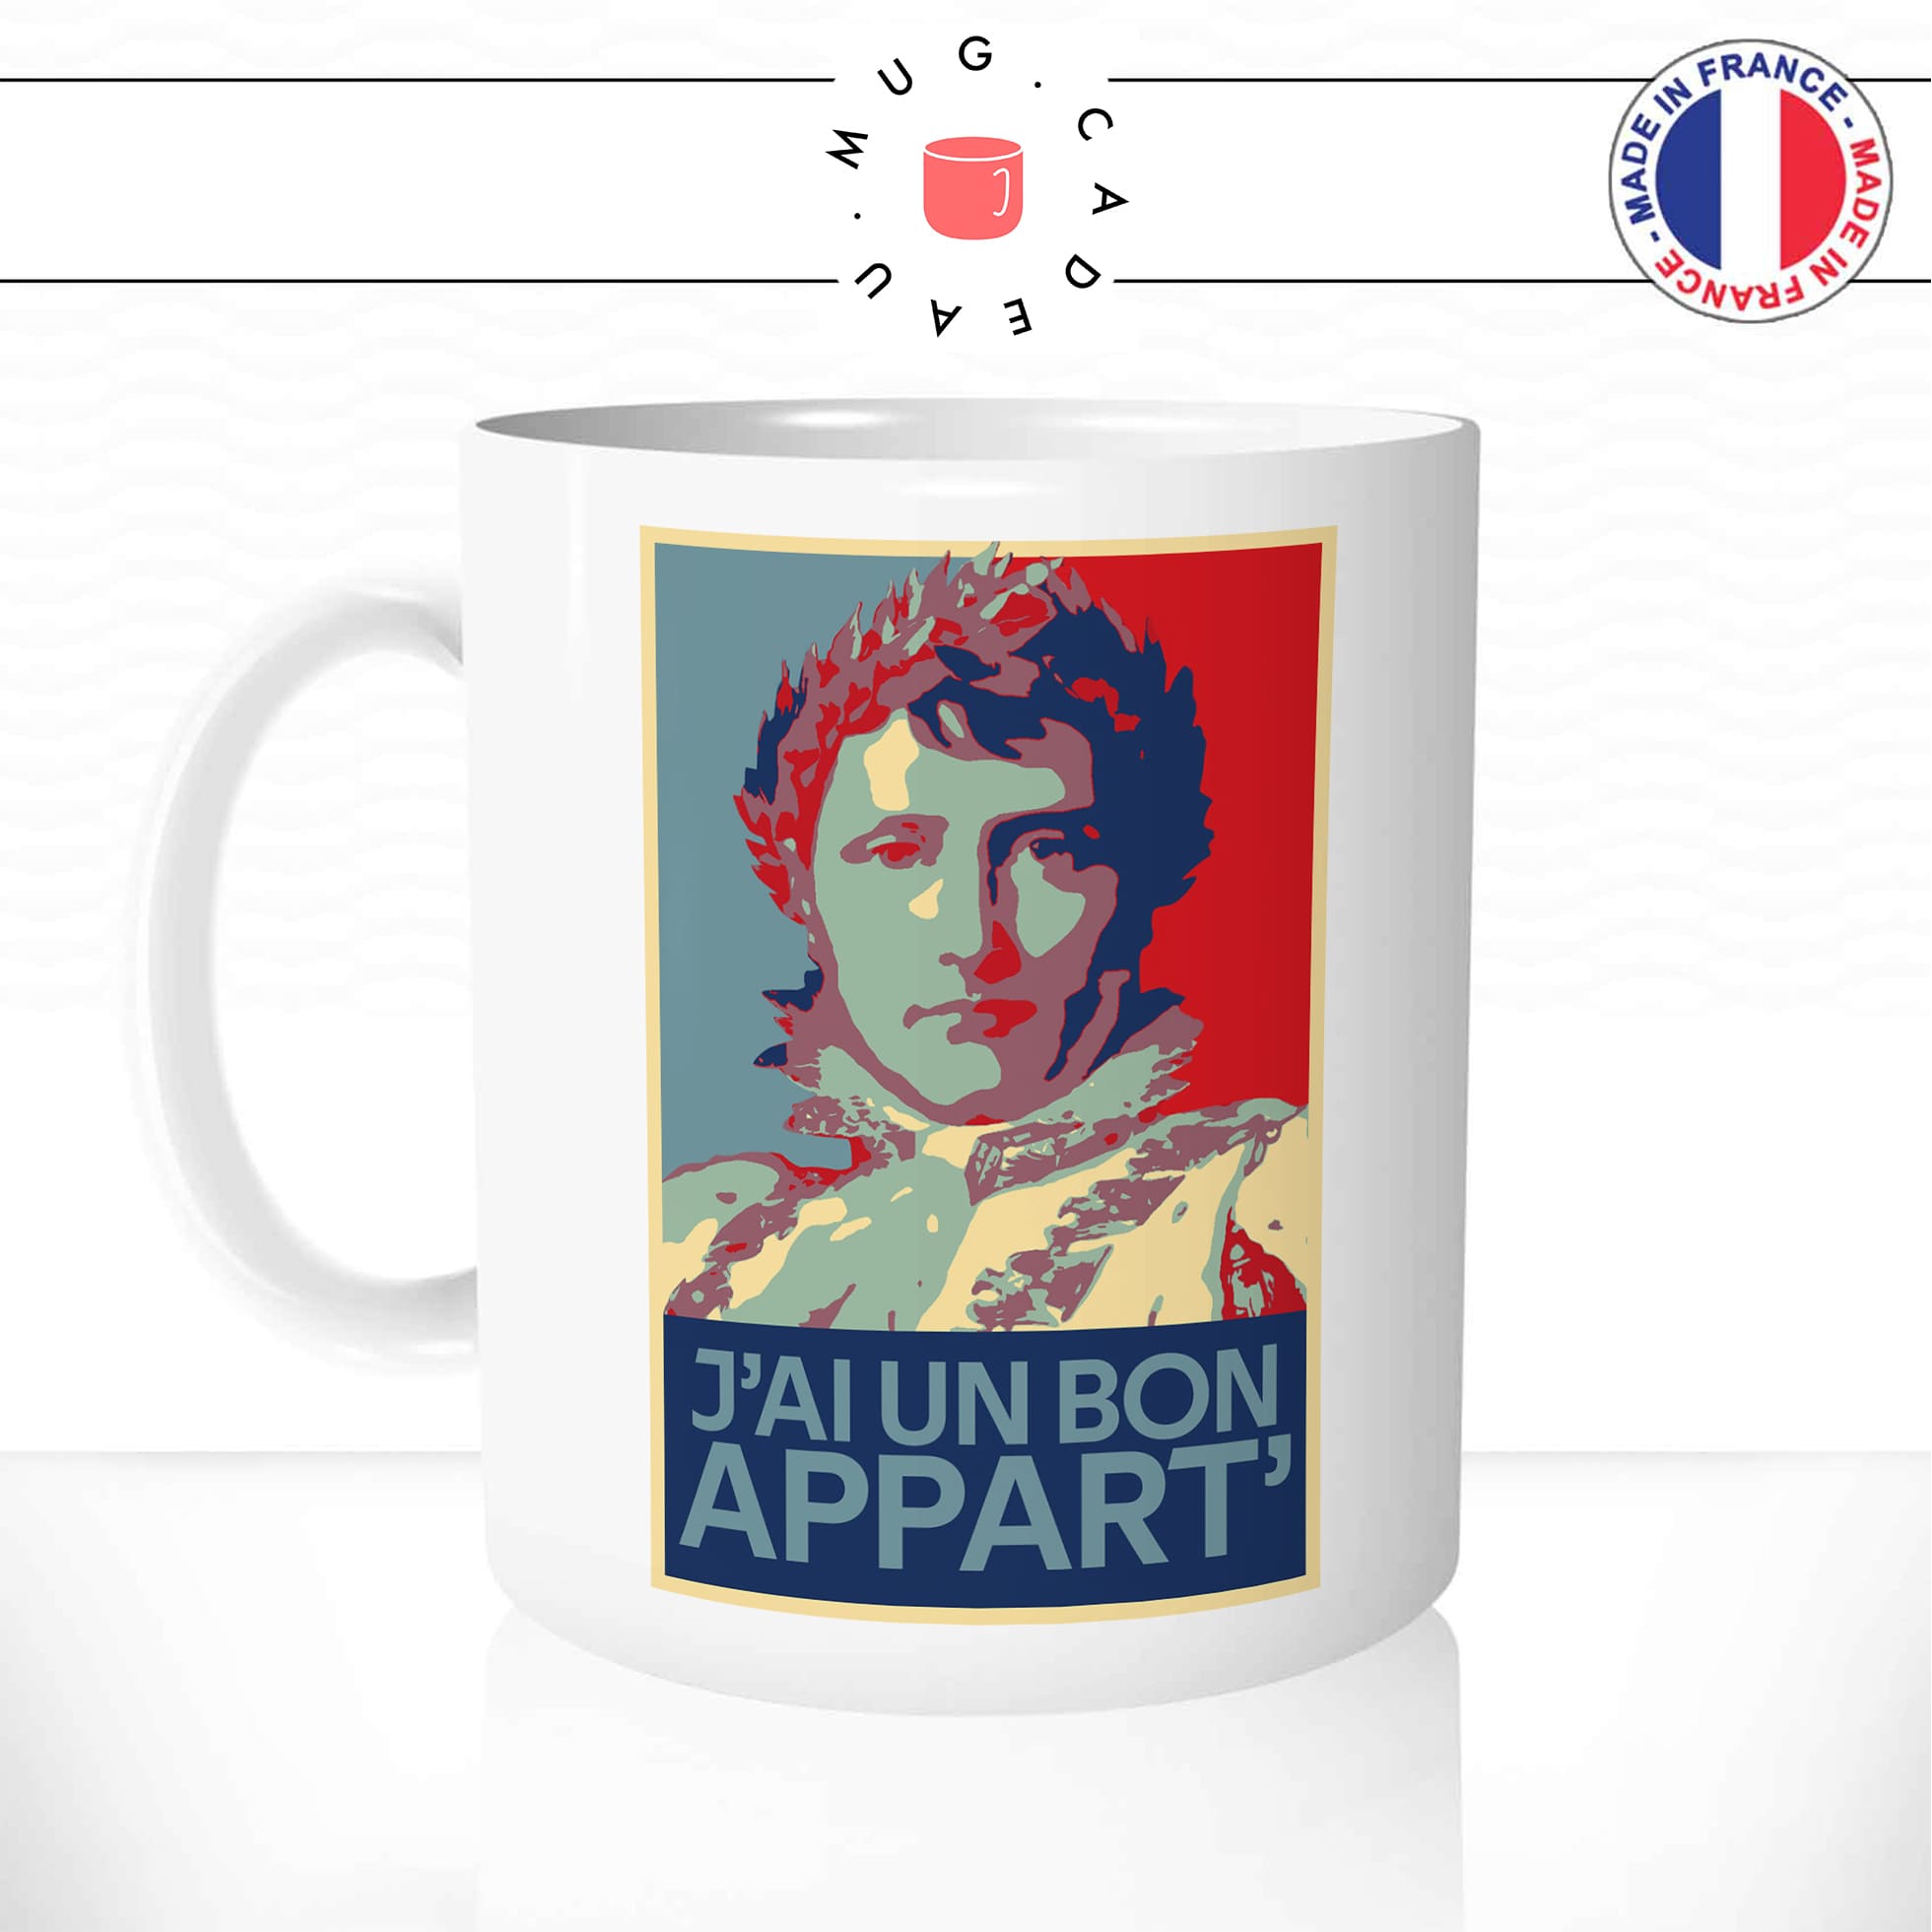 mug-tasse-blanc-simple-napoleon-bonaparte-j'ai-un-bon-appart-blague-empereur-francais-affiche-obama-drole-idée-cadeau-originale-café-thé